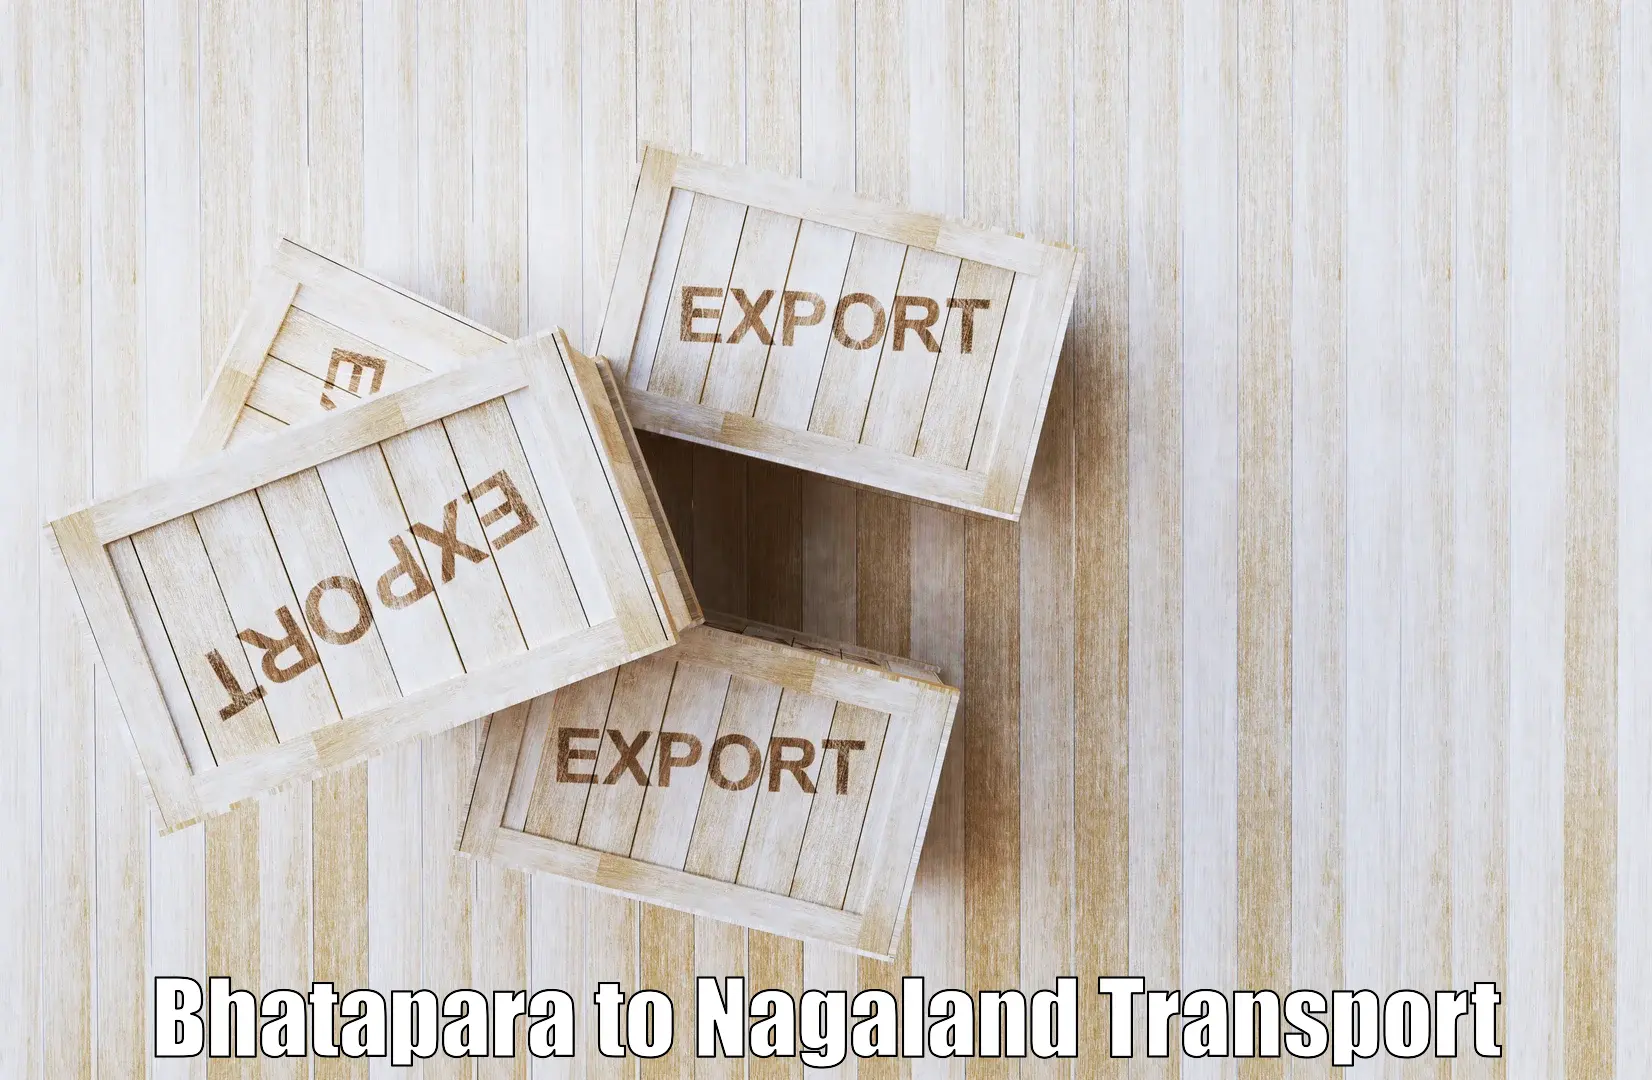 Daily transport service Bhatapara to Nagaland